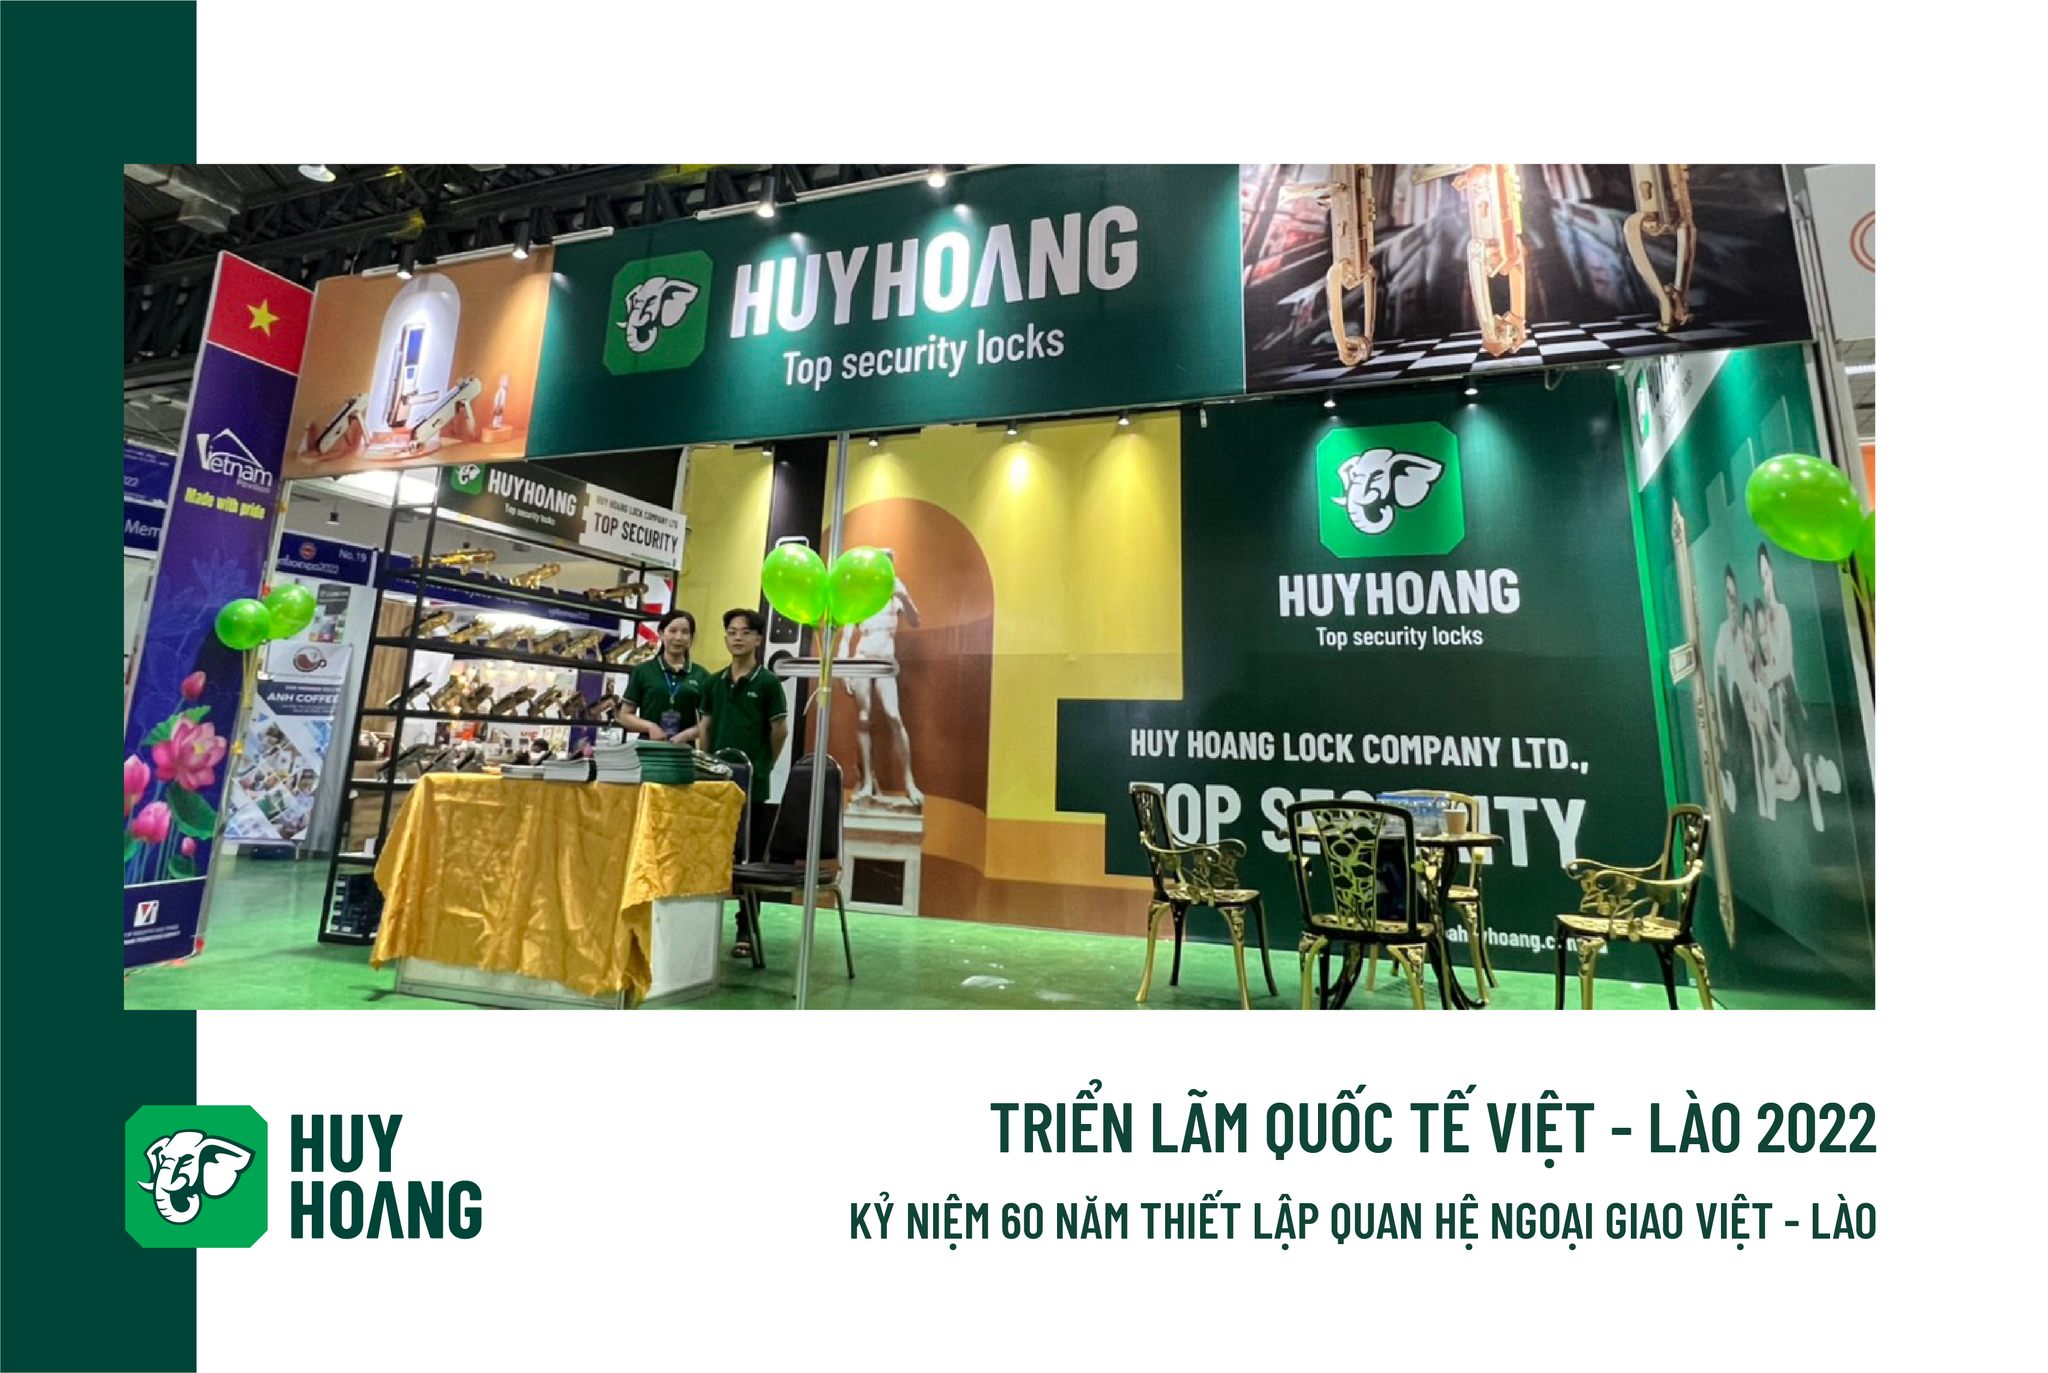 Khóa Huy Hoàng tự hào giới thiệu sản phẩm Khóa Việt tại Viet Lao Expo